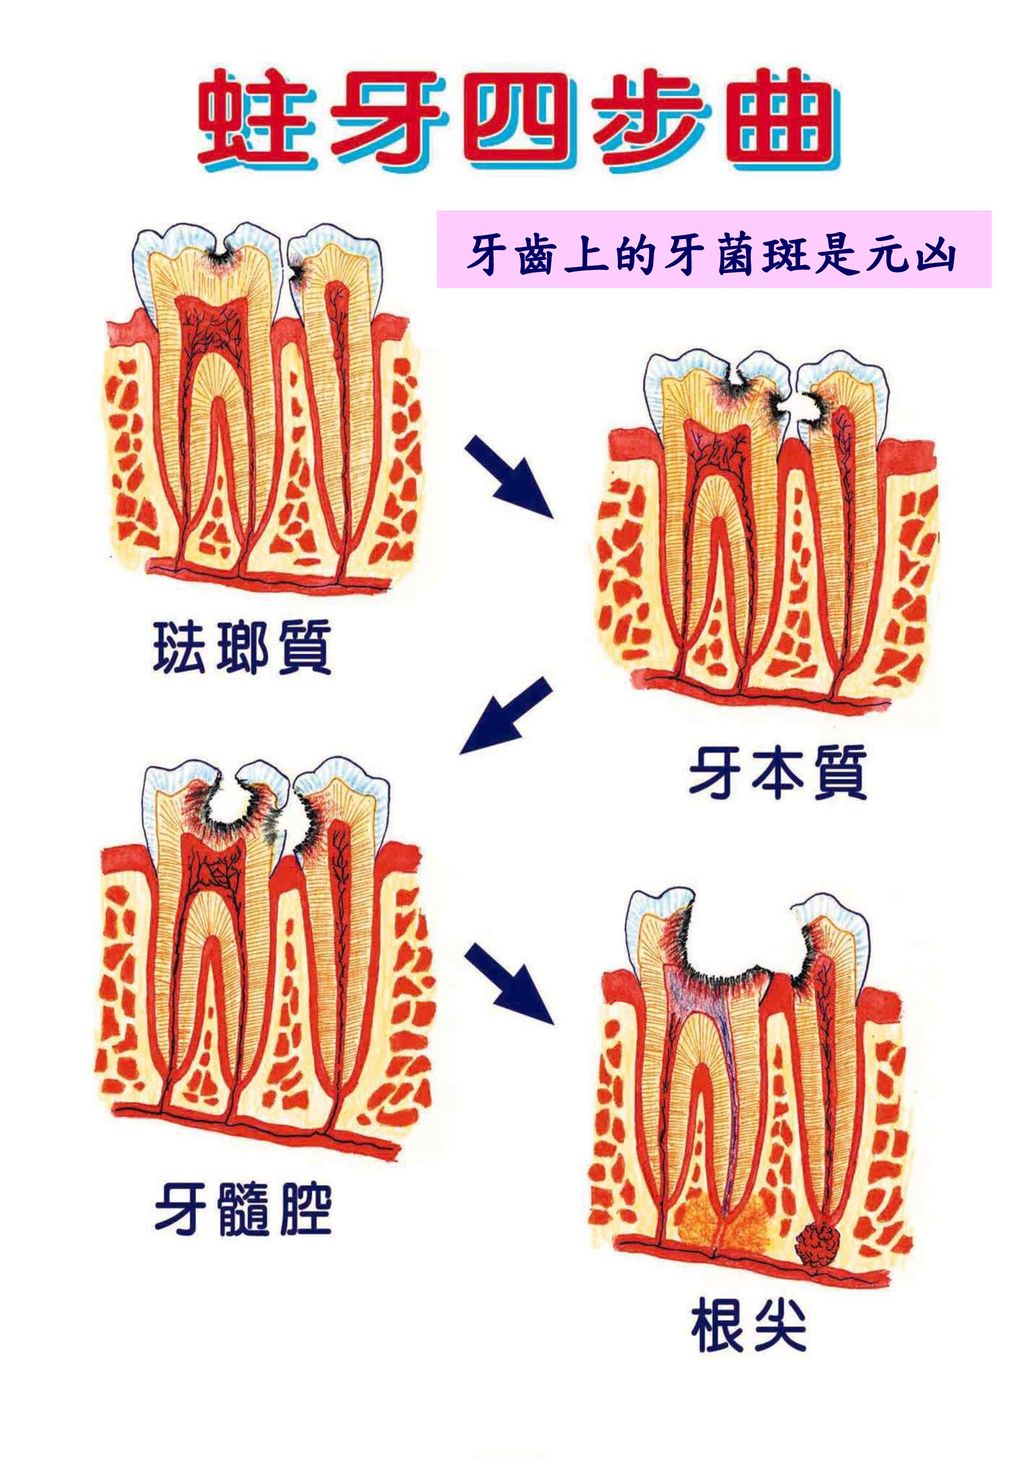 牙齒上的牙菌斑是元凶